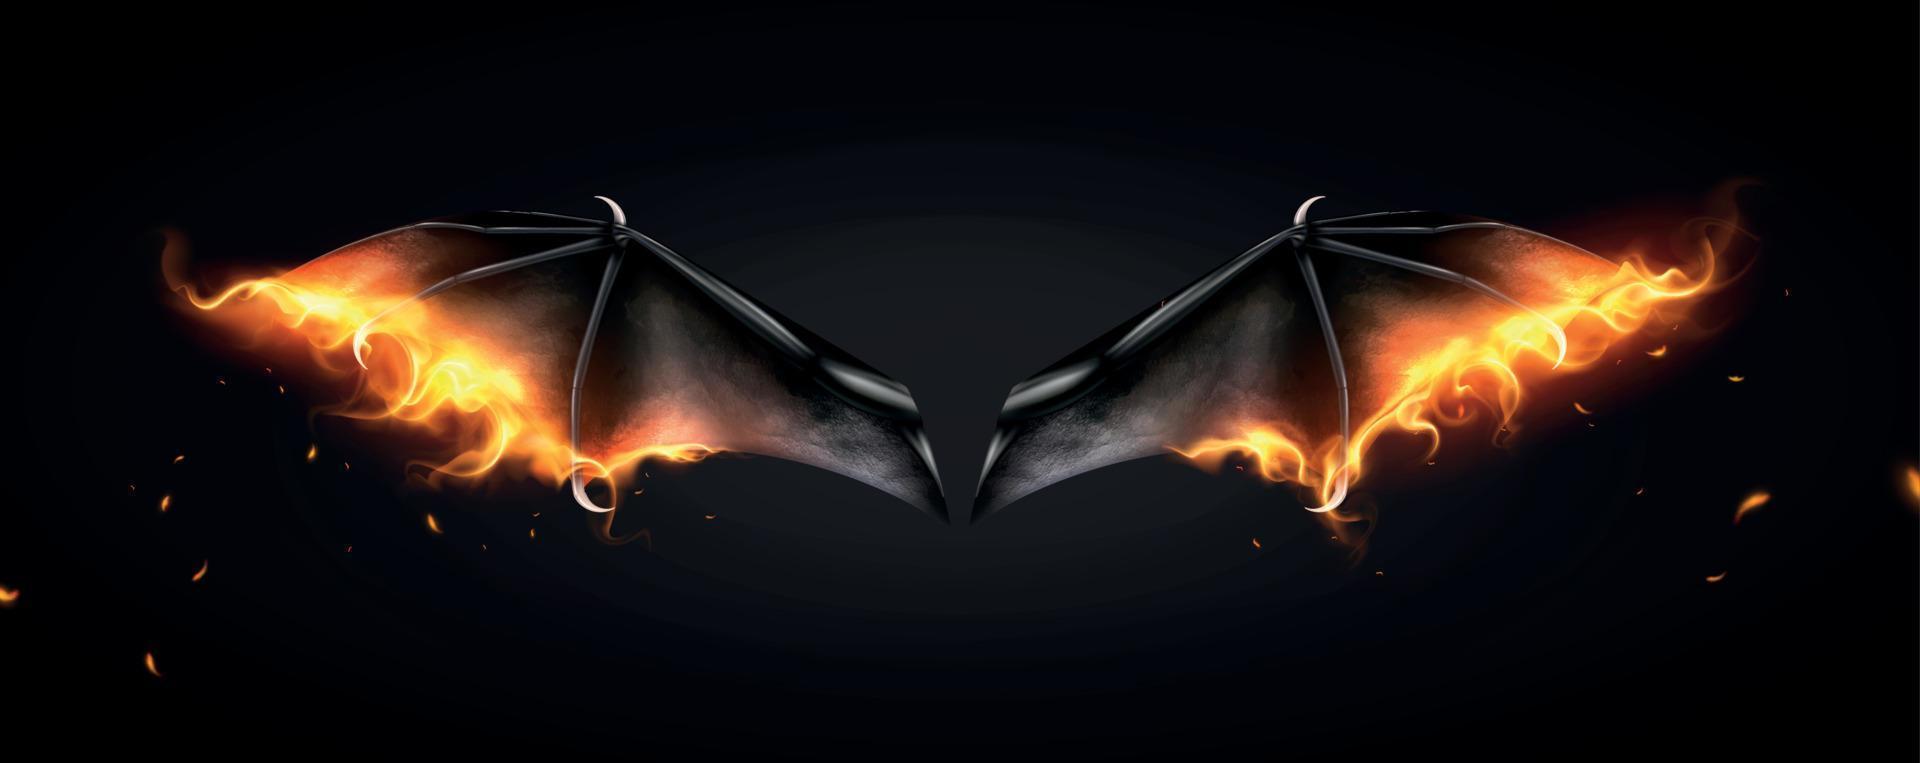 Daemon Bat Fire Composition vector